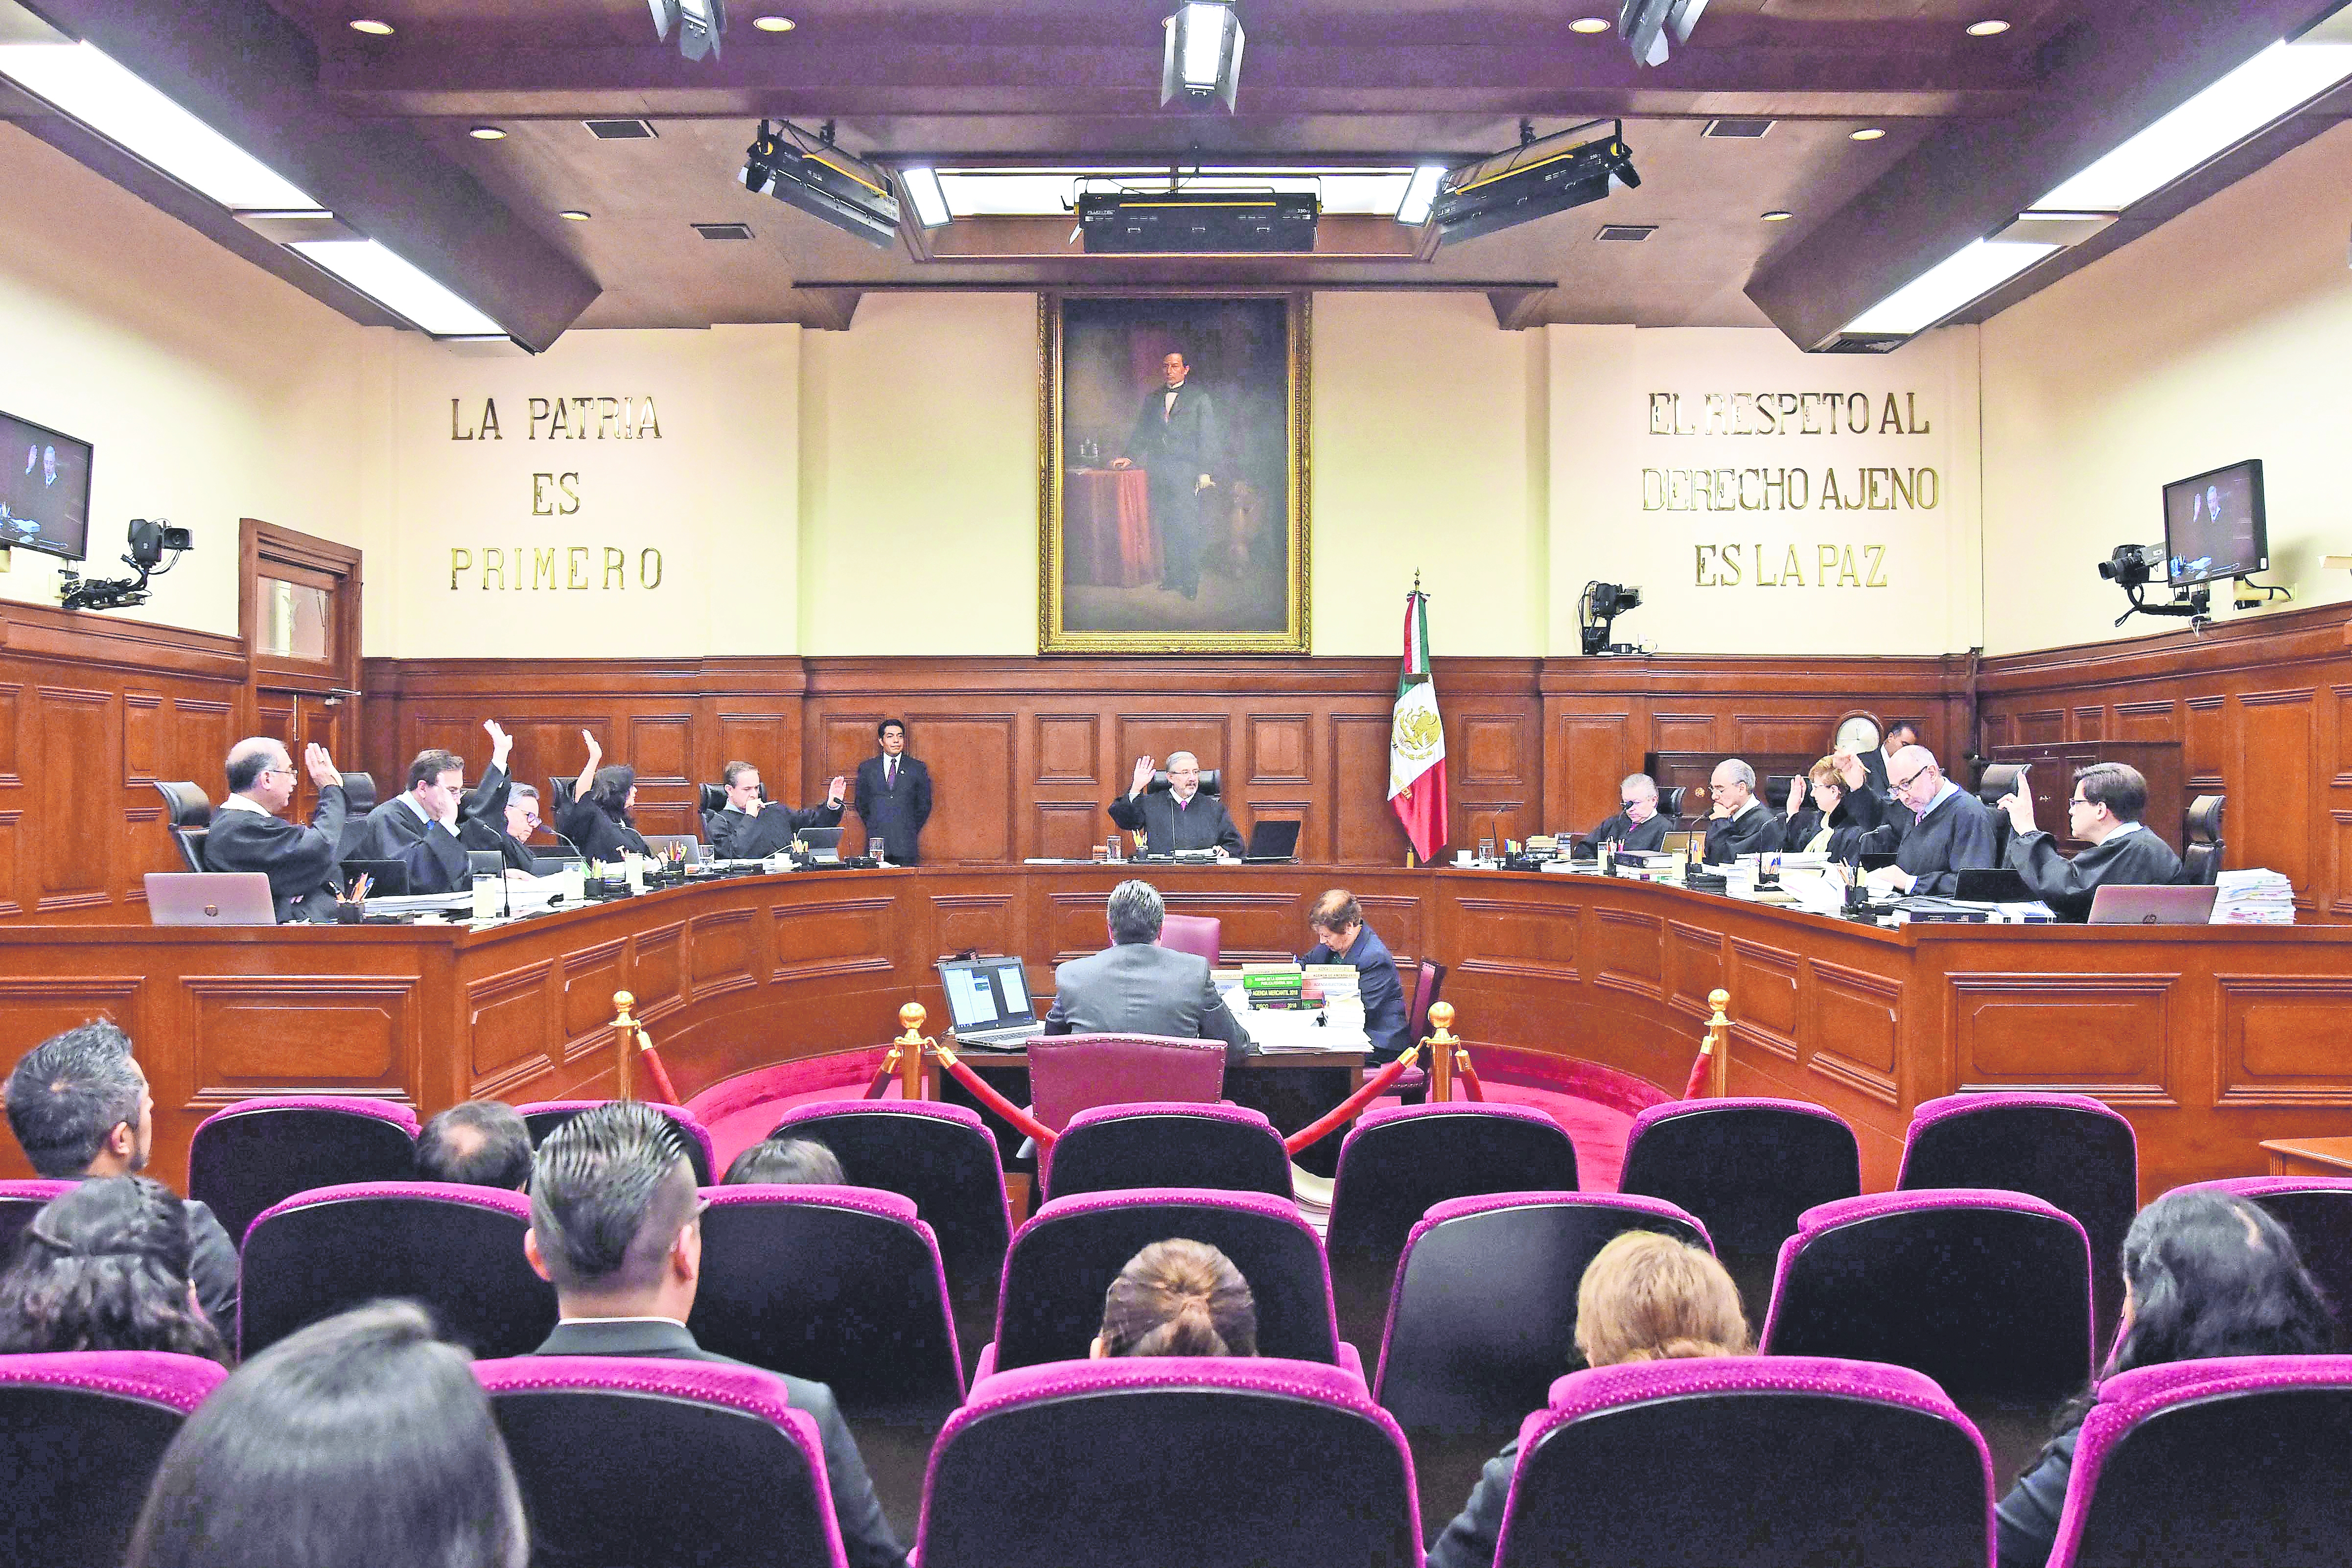 Da Corte entrada a acciones de inconstitucionalidad contra "superdelegados"